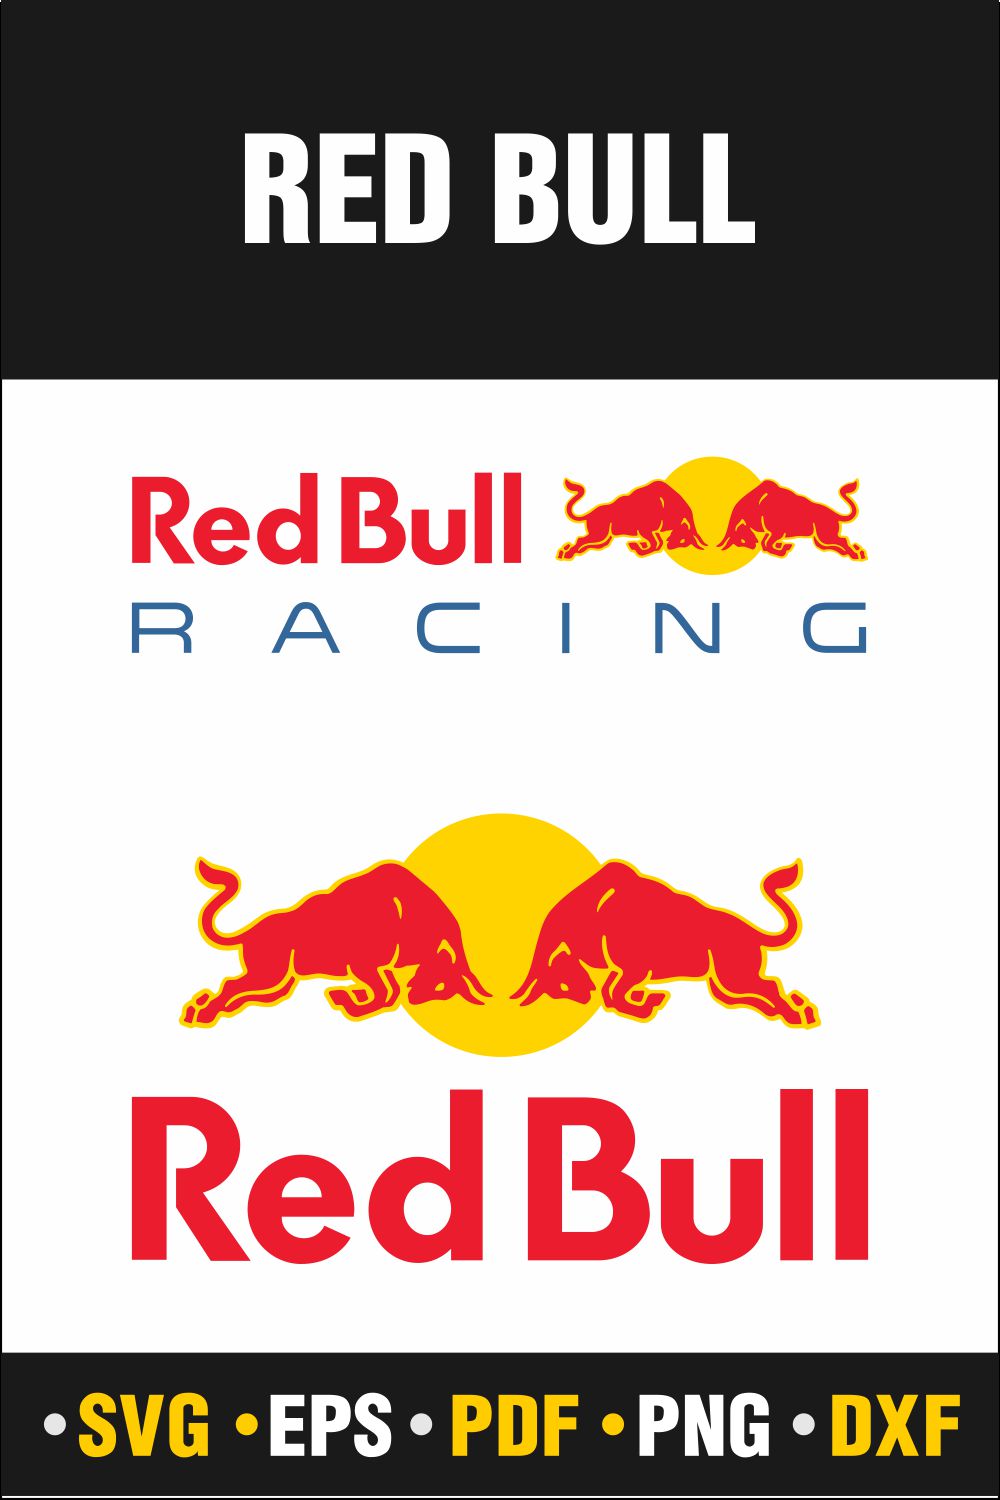 Red Bull Logo Vector | Drinks logo, Red bull, Bull logo